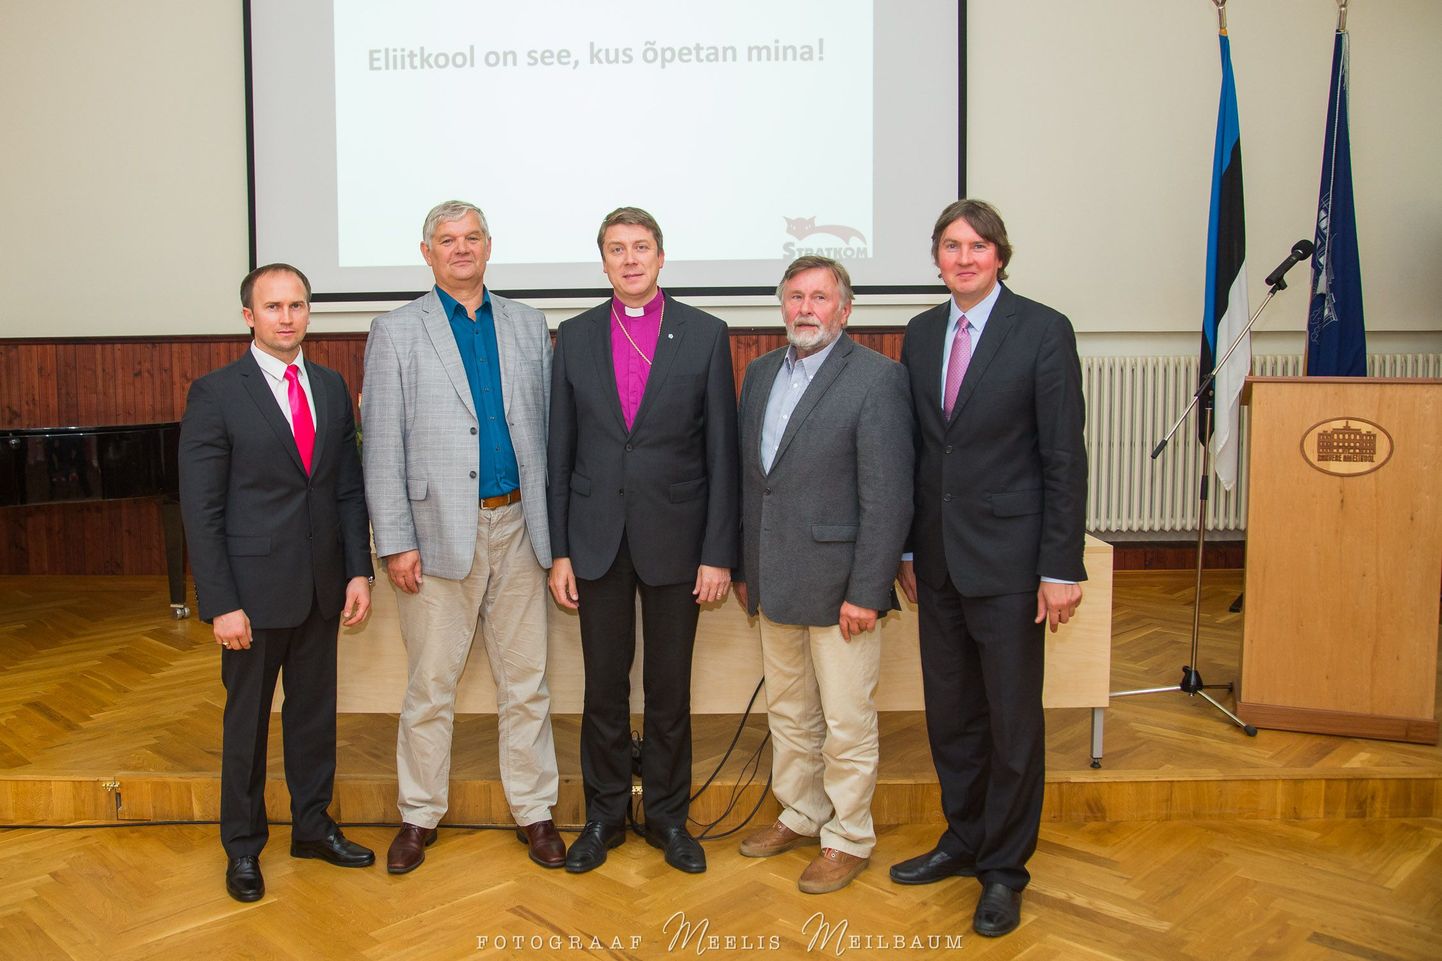 Eelmise aasta hariduspäev: vasakult Sven Hõbemägi, Raul Rebane, Urmas Viilma, Helmer Jõgi ja Rakvere ametikooli direktor Kuno Rooba.